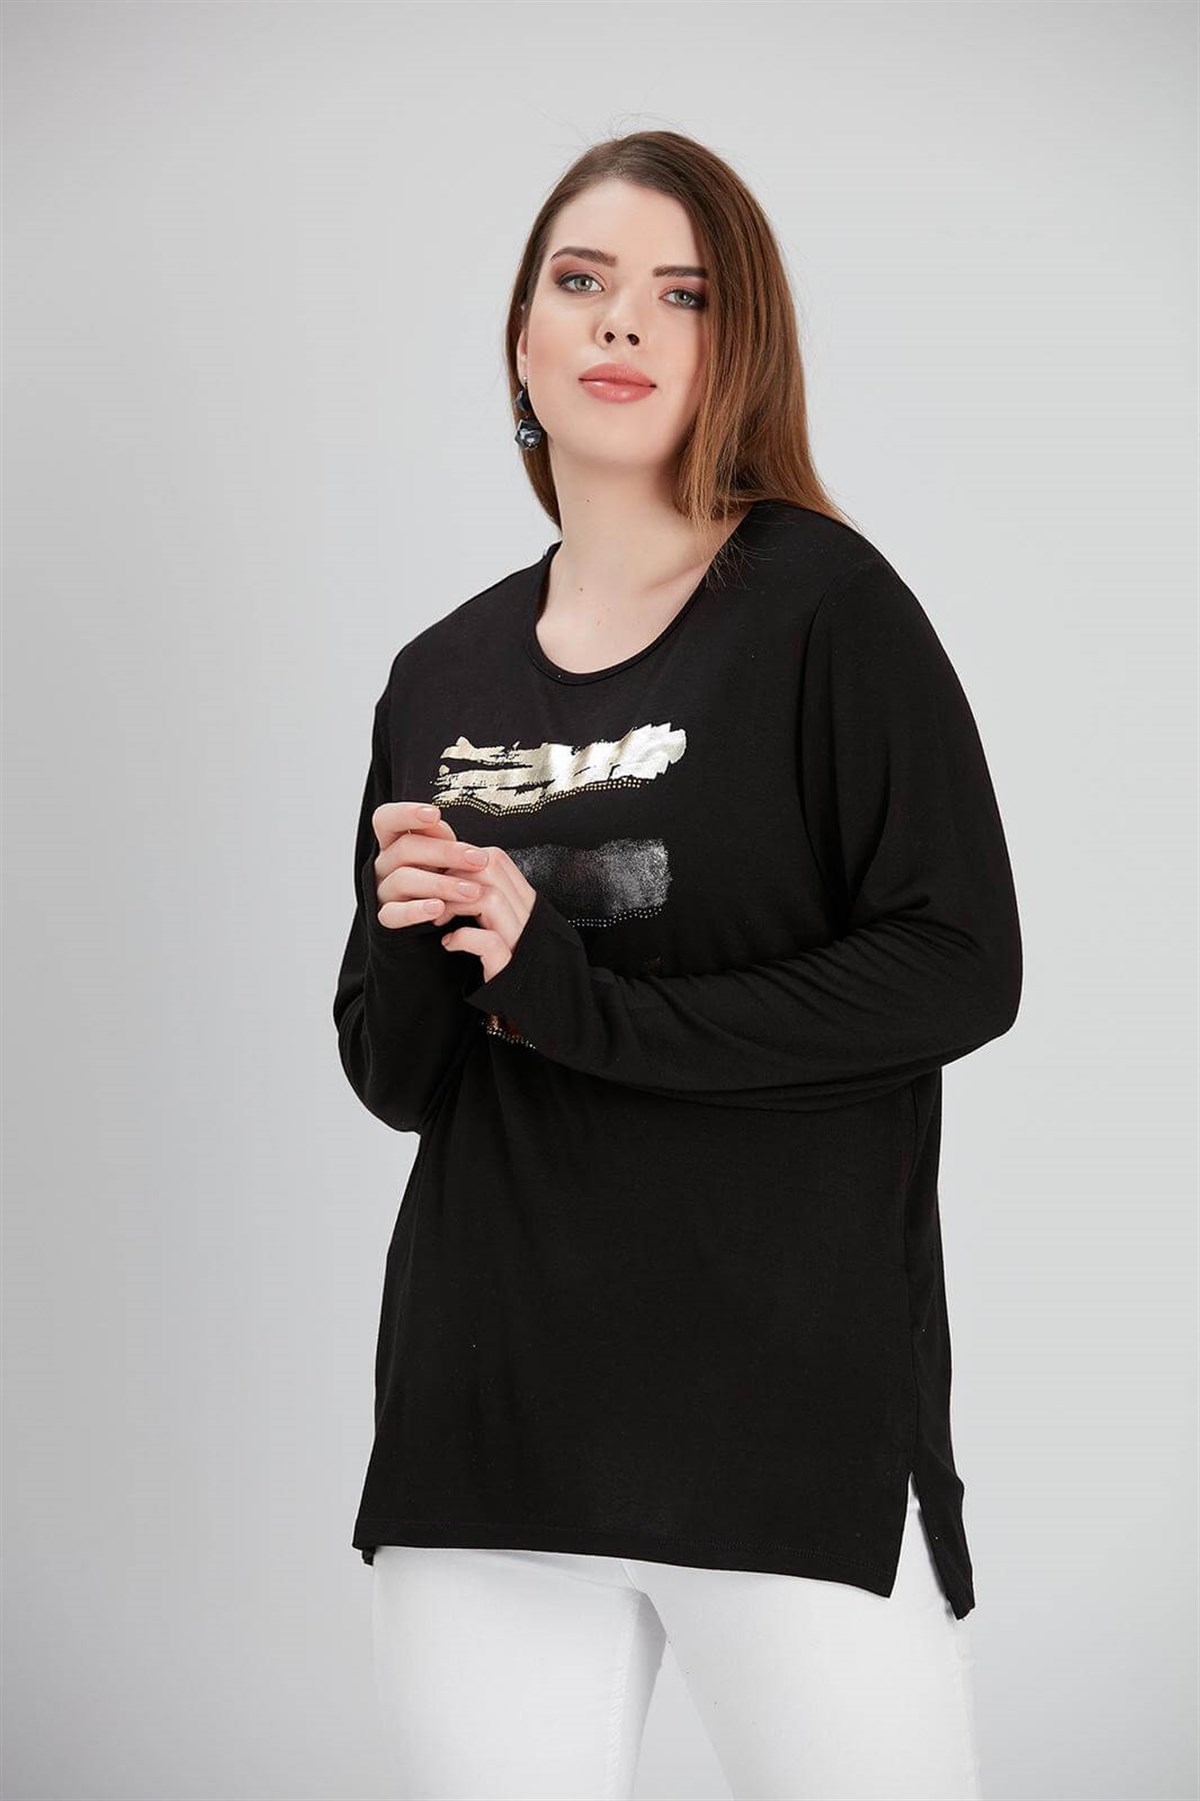 Kadın Büyük Beden Kışlık Bluz ve Tişört Modelleri|Heves Giyim